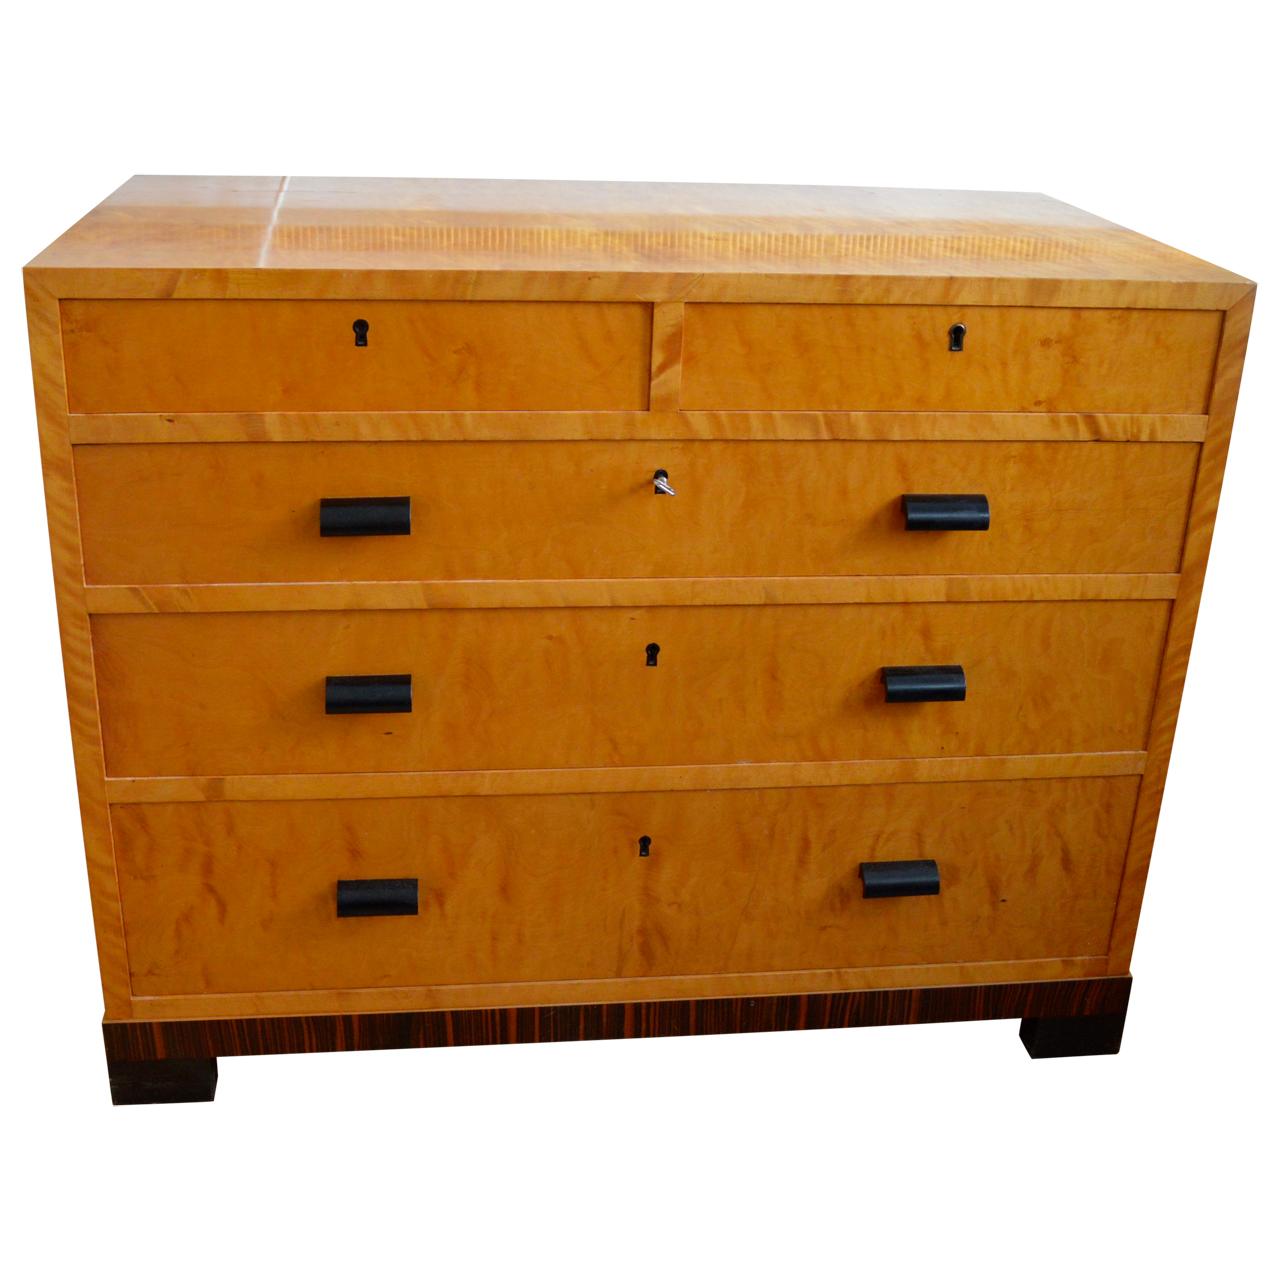 birdseye maple veneer furniture